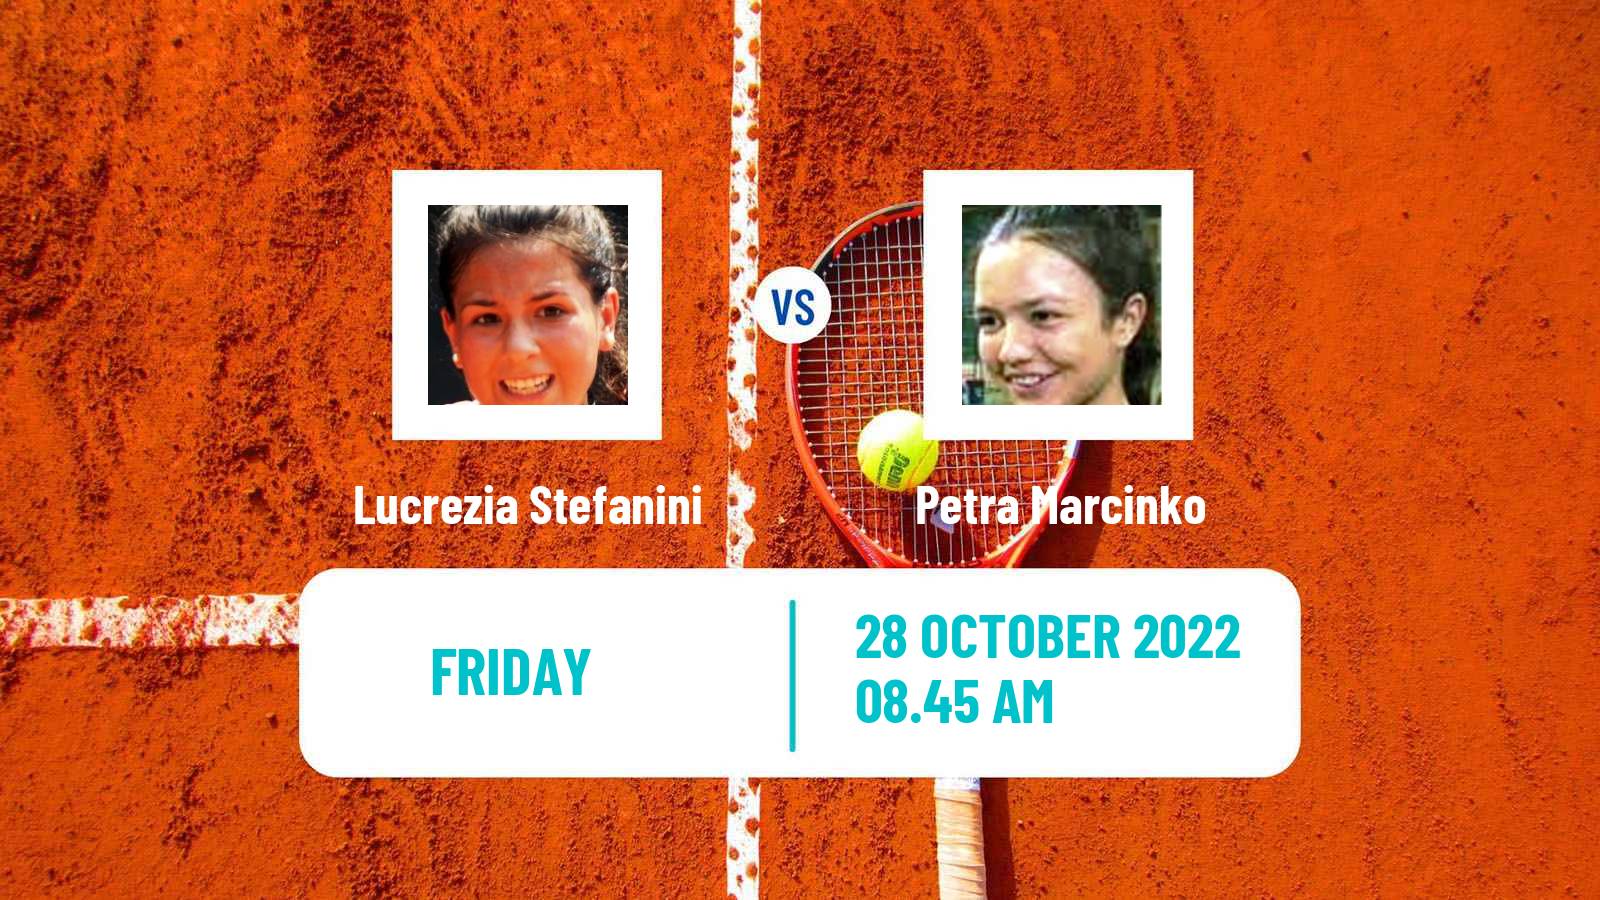 Tennis ITF Tournaments Lucrezia Stefanini - Petra Marcinko